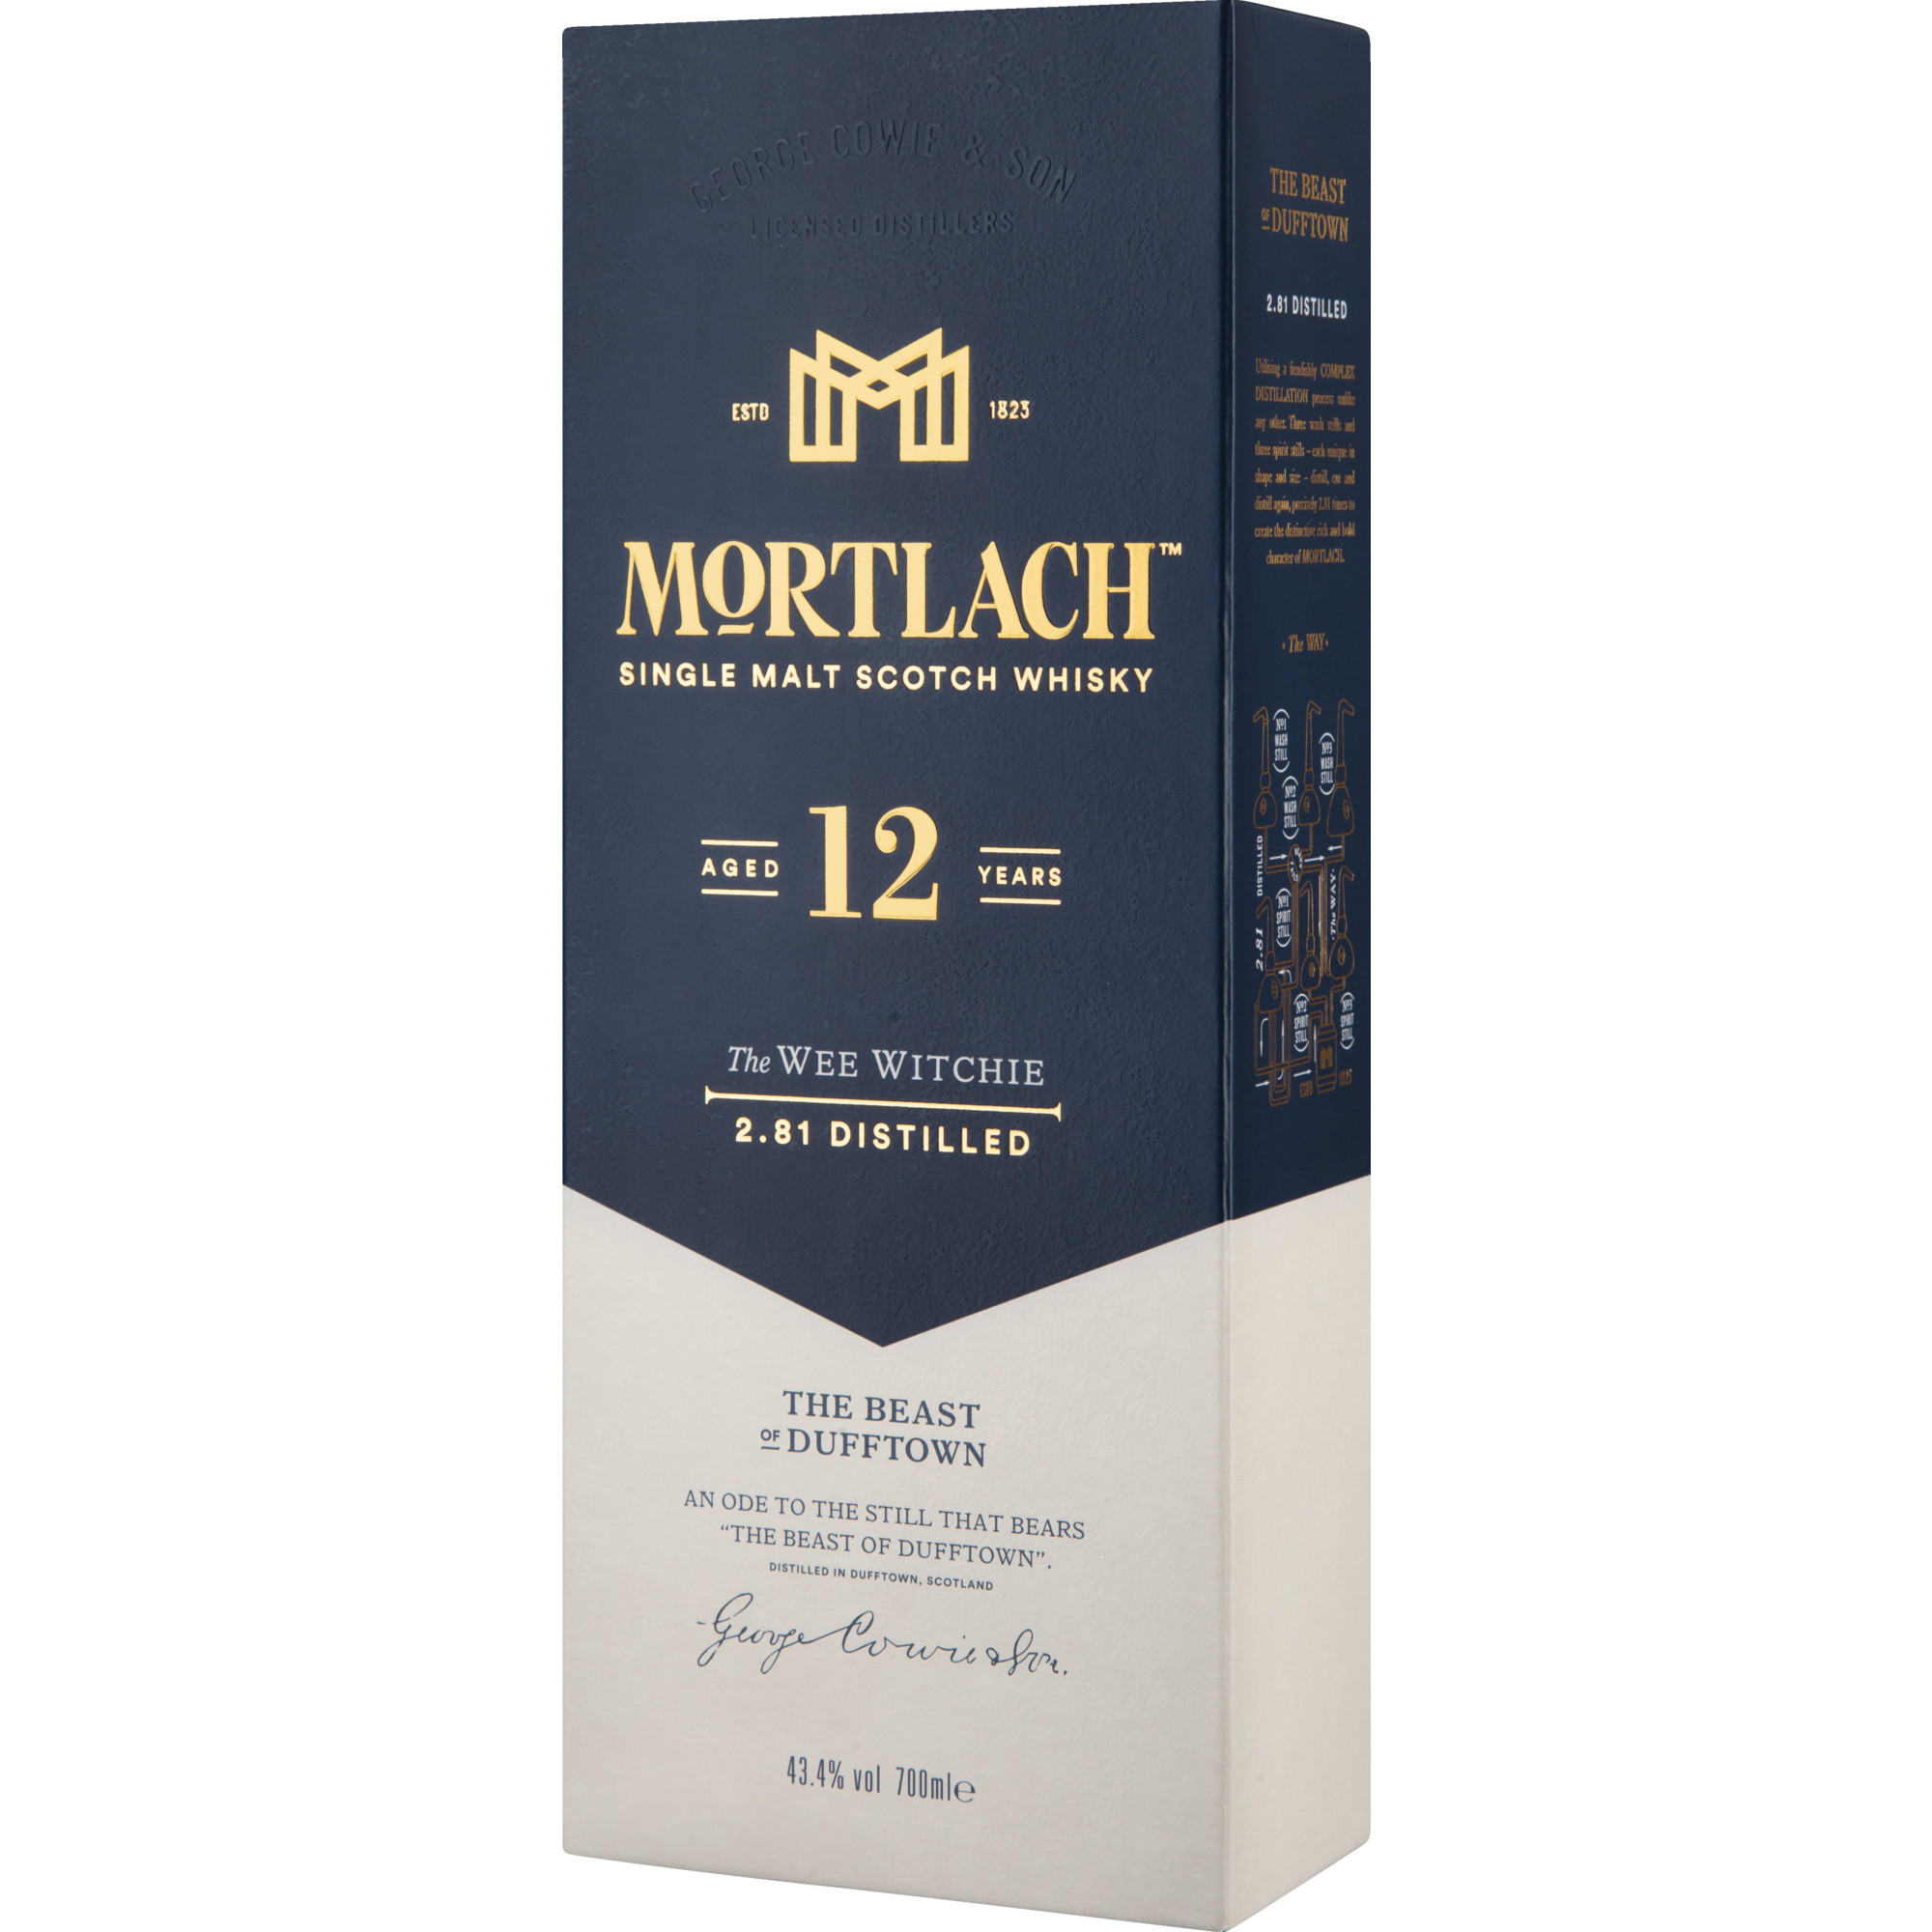 Mortlach The Wee Witchie 12 Years Single Malt, Scotch Whisky, 0,7 L, 43,4% Vol., Schottland, Spirituosen Mortlach Distillery, AB55 4AQ Keith Dufftown Banffshire, Scotland Hawesko DE